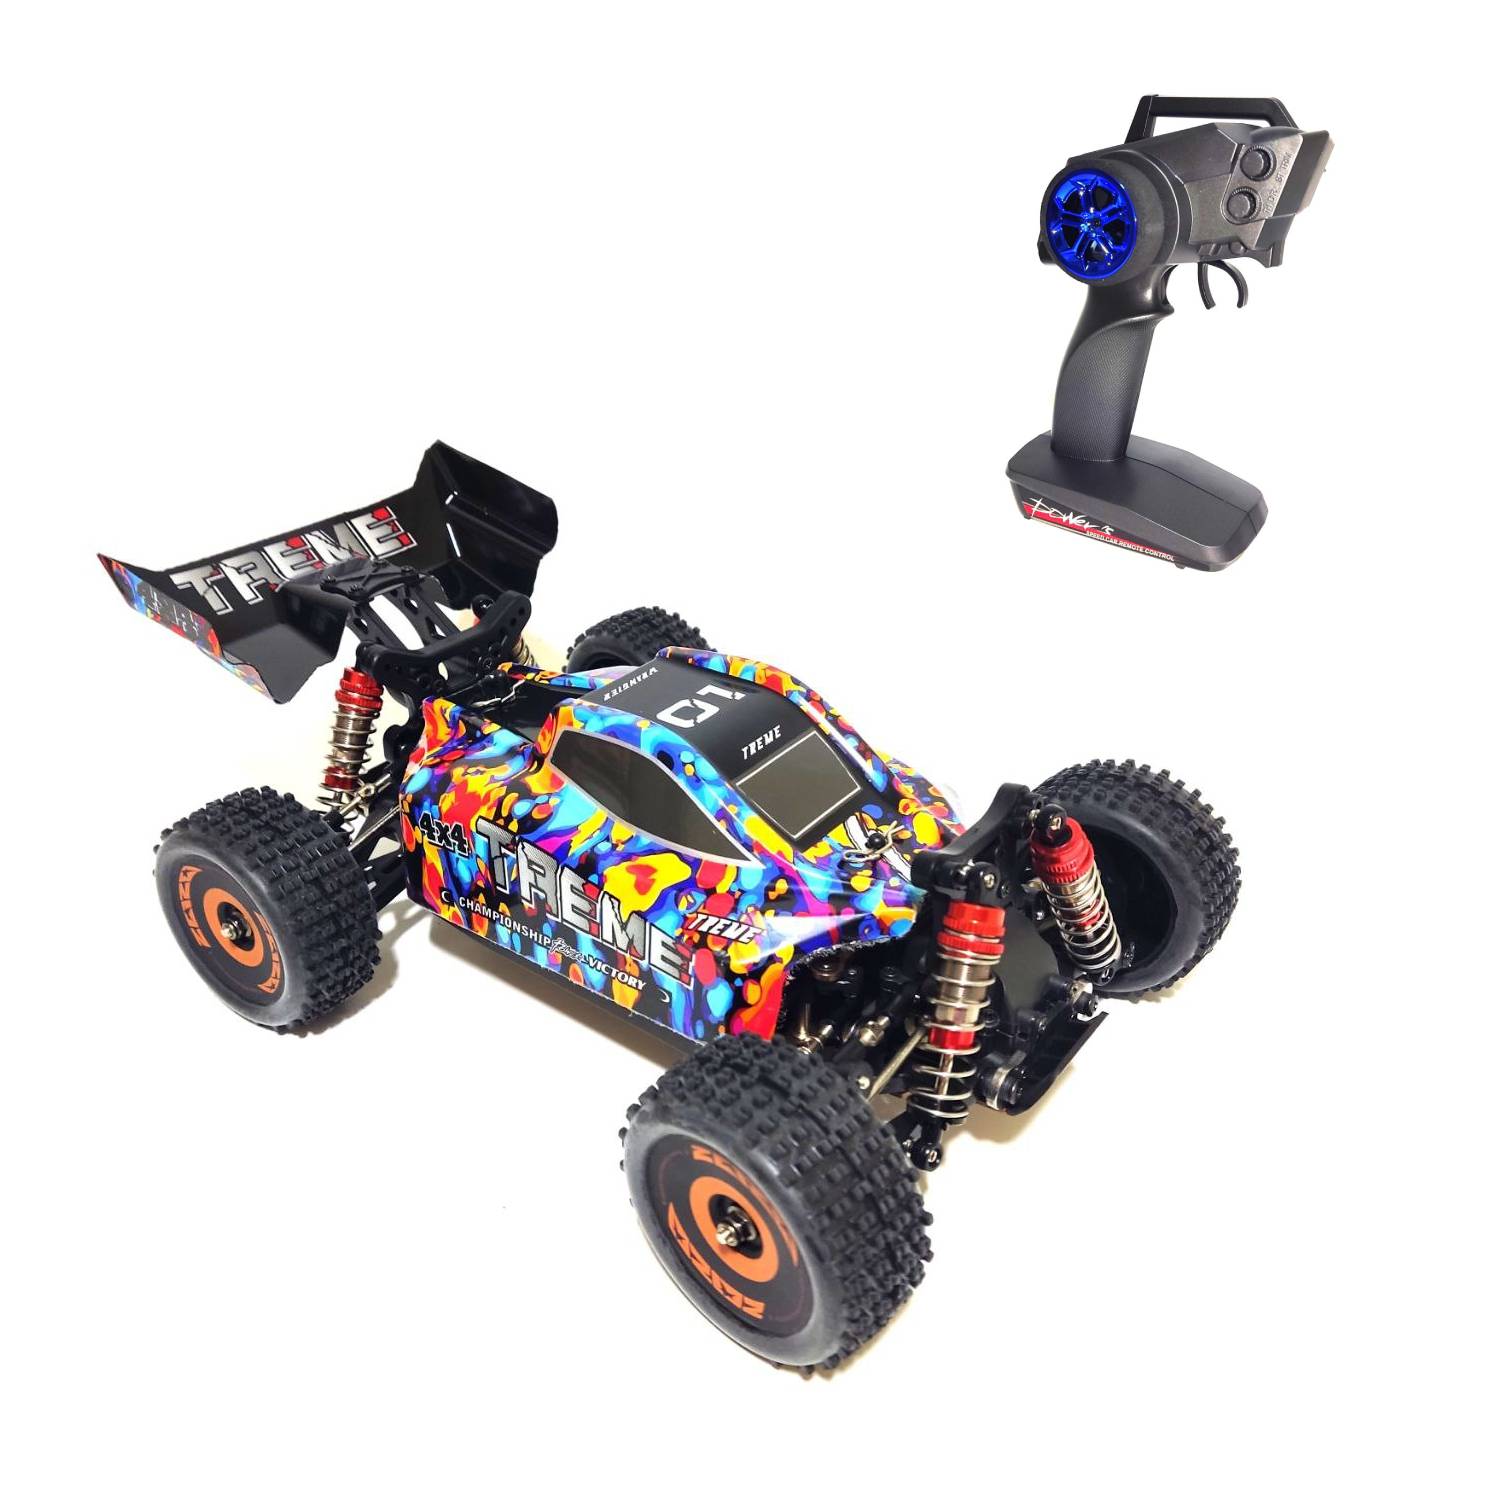 Радиоуправляемый багги WL Toys Brushless 4WD RTR масштаб 1:18 2.4G WLT-184016 радиоуправляемый монстр wl toys 4wd rtr масштаб 1 18 2 4g wlt 18409